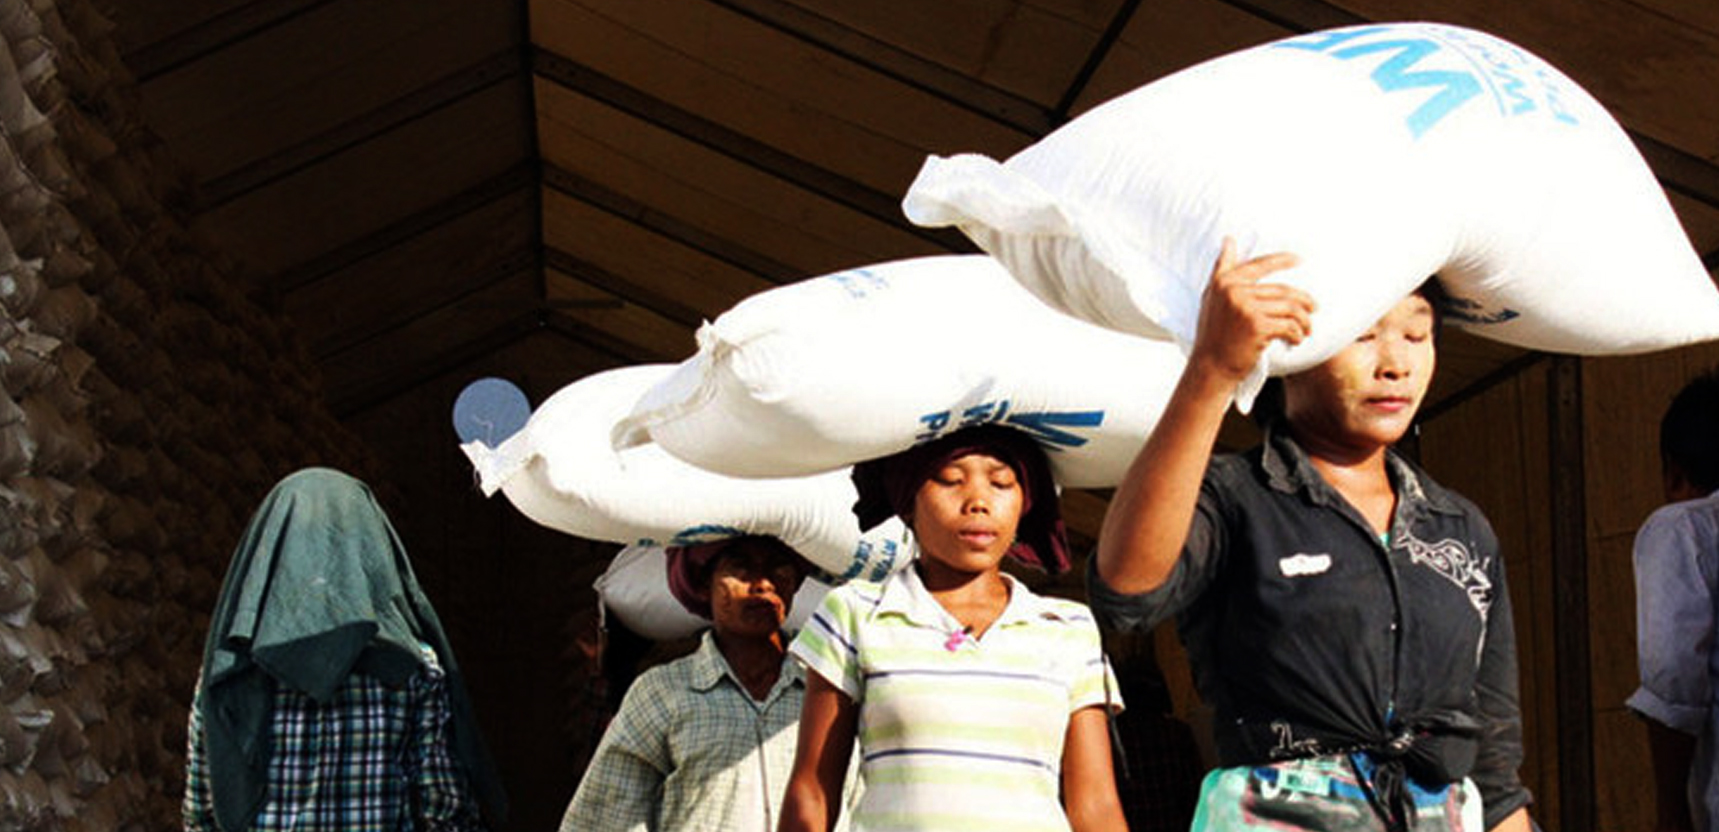 نازحات في ميانمار يحصلن على مساعدات غذائية